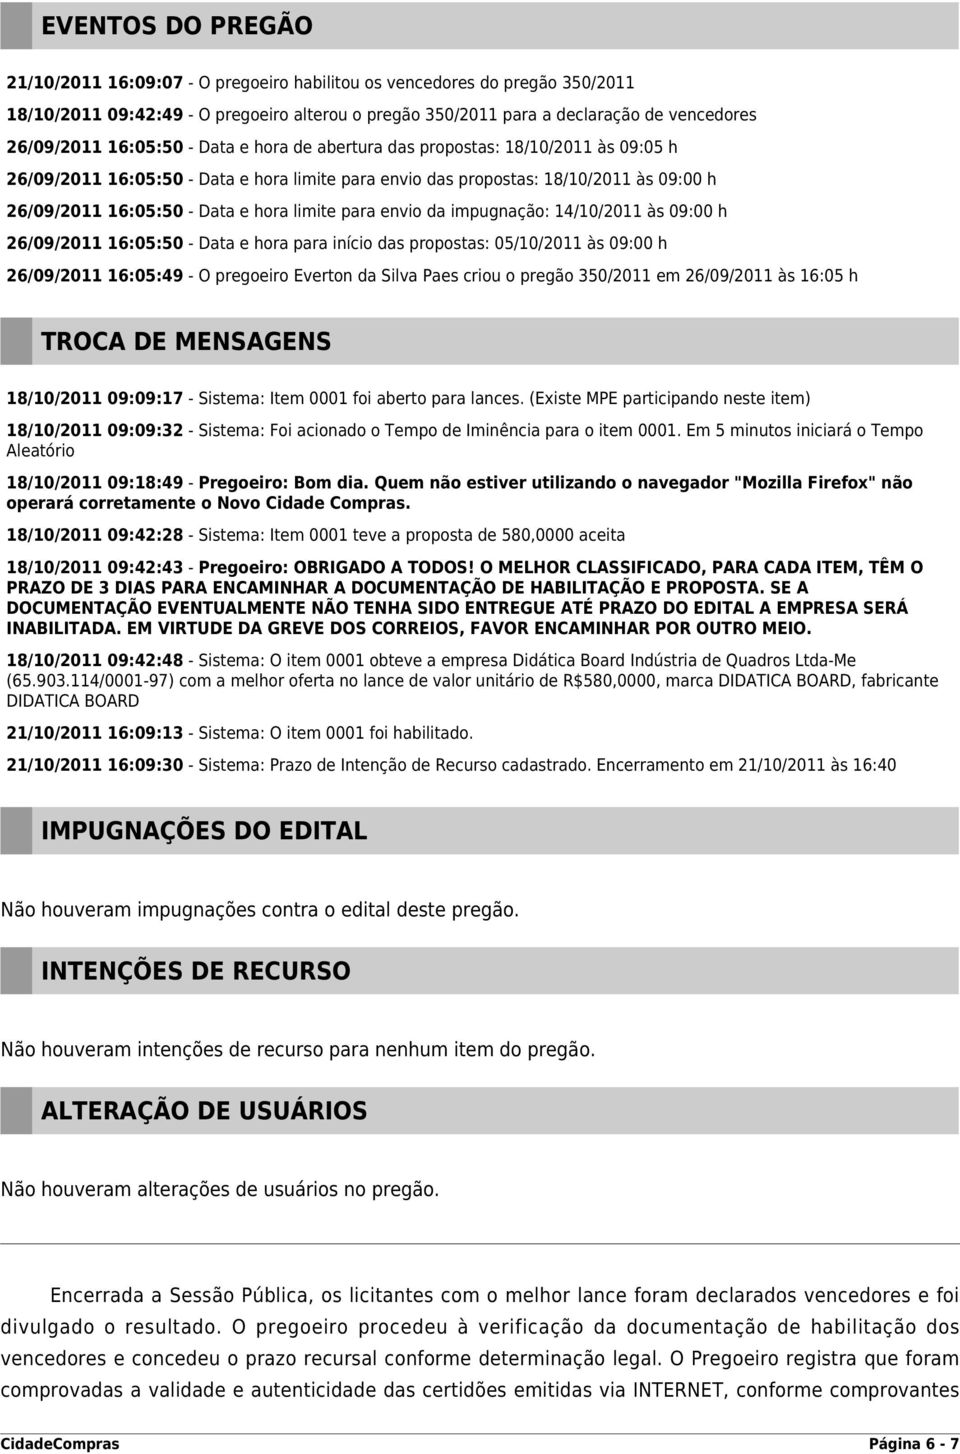 limite para envio da impugnação: 14/10/2011 às 09:00 h 26/09/2011 16:05:50 - Data e hora para início das propostas: 05/10/2011 às 09:00 h 26/09/2011 16:05:49 - O pregoeiro Everton da Silva Paes criou